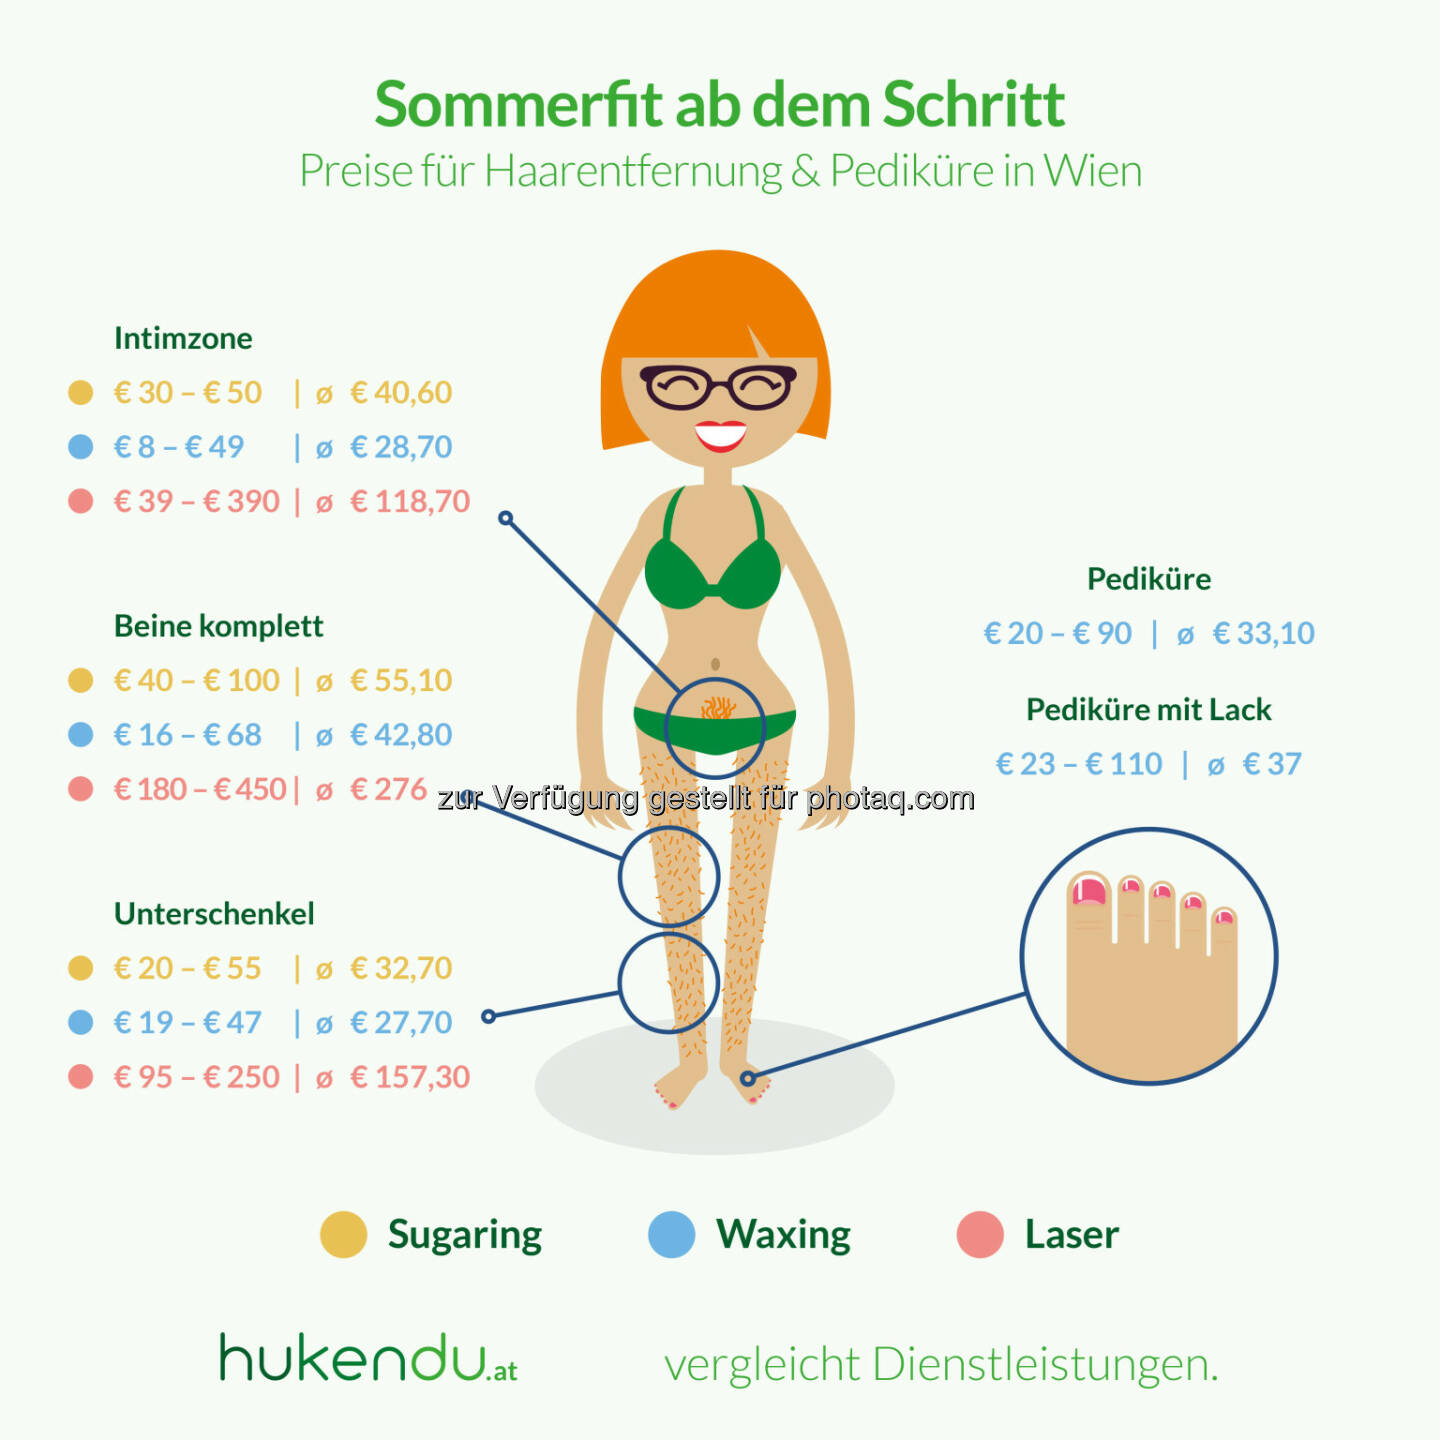 Grafik „Sommerfit ab dem Schritt“ : Kosten für Haarentfernung und Pediküre 2016 in Wien : Fotocredit: hukendu.at